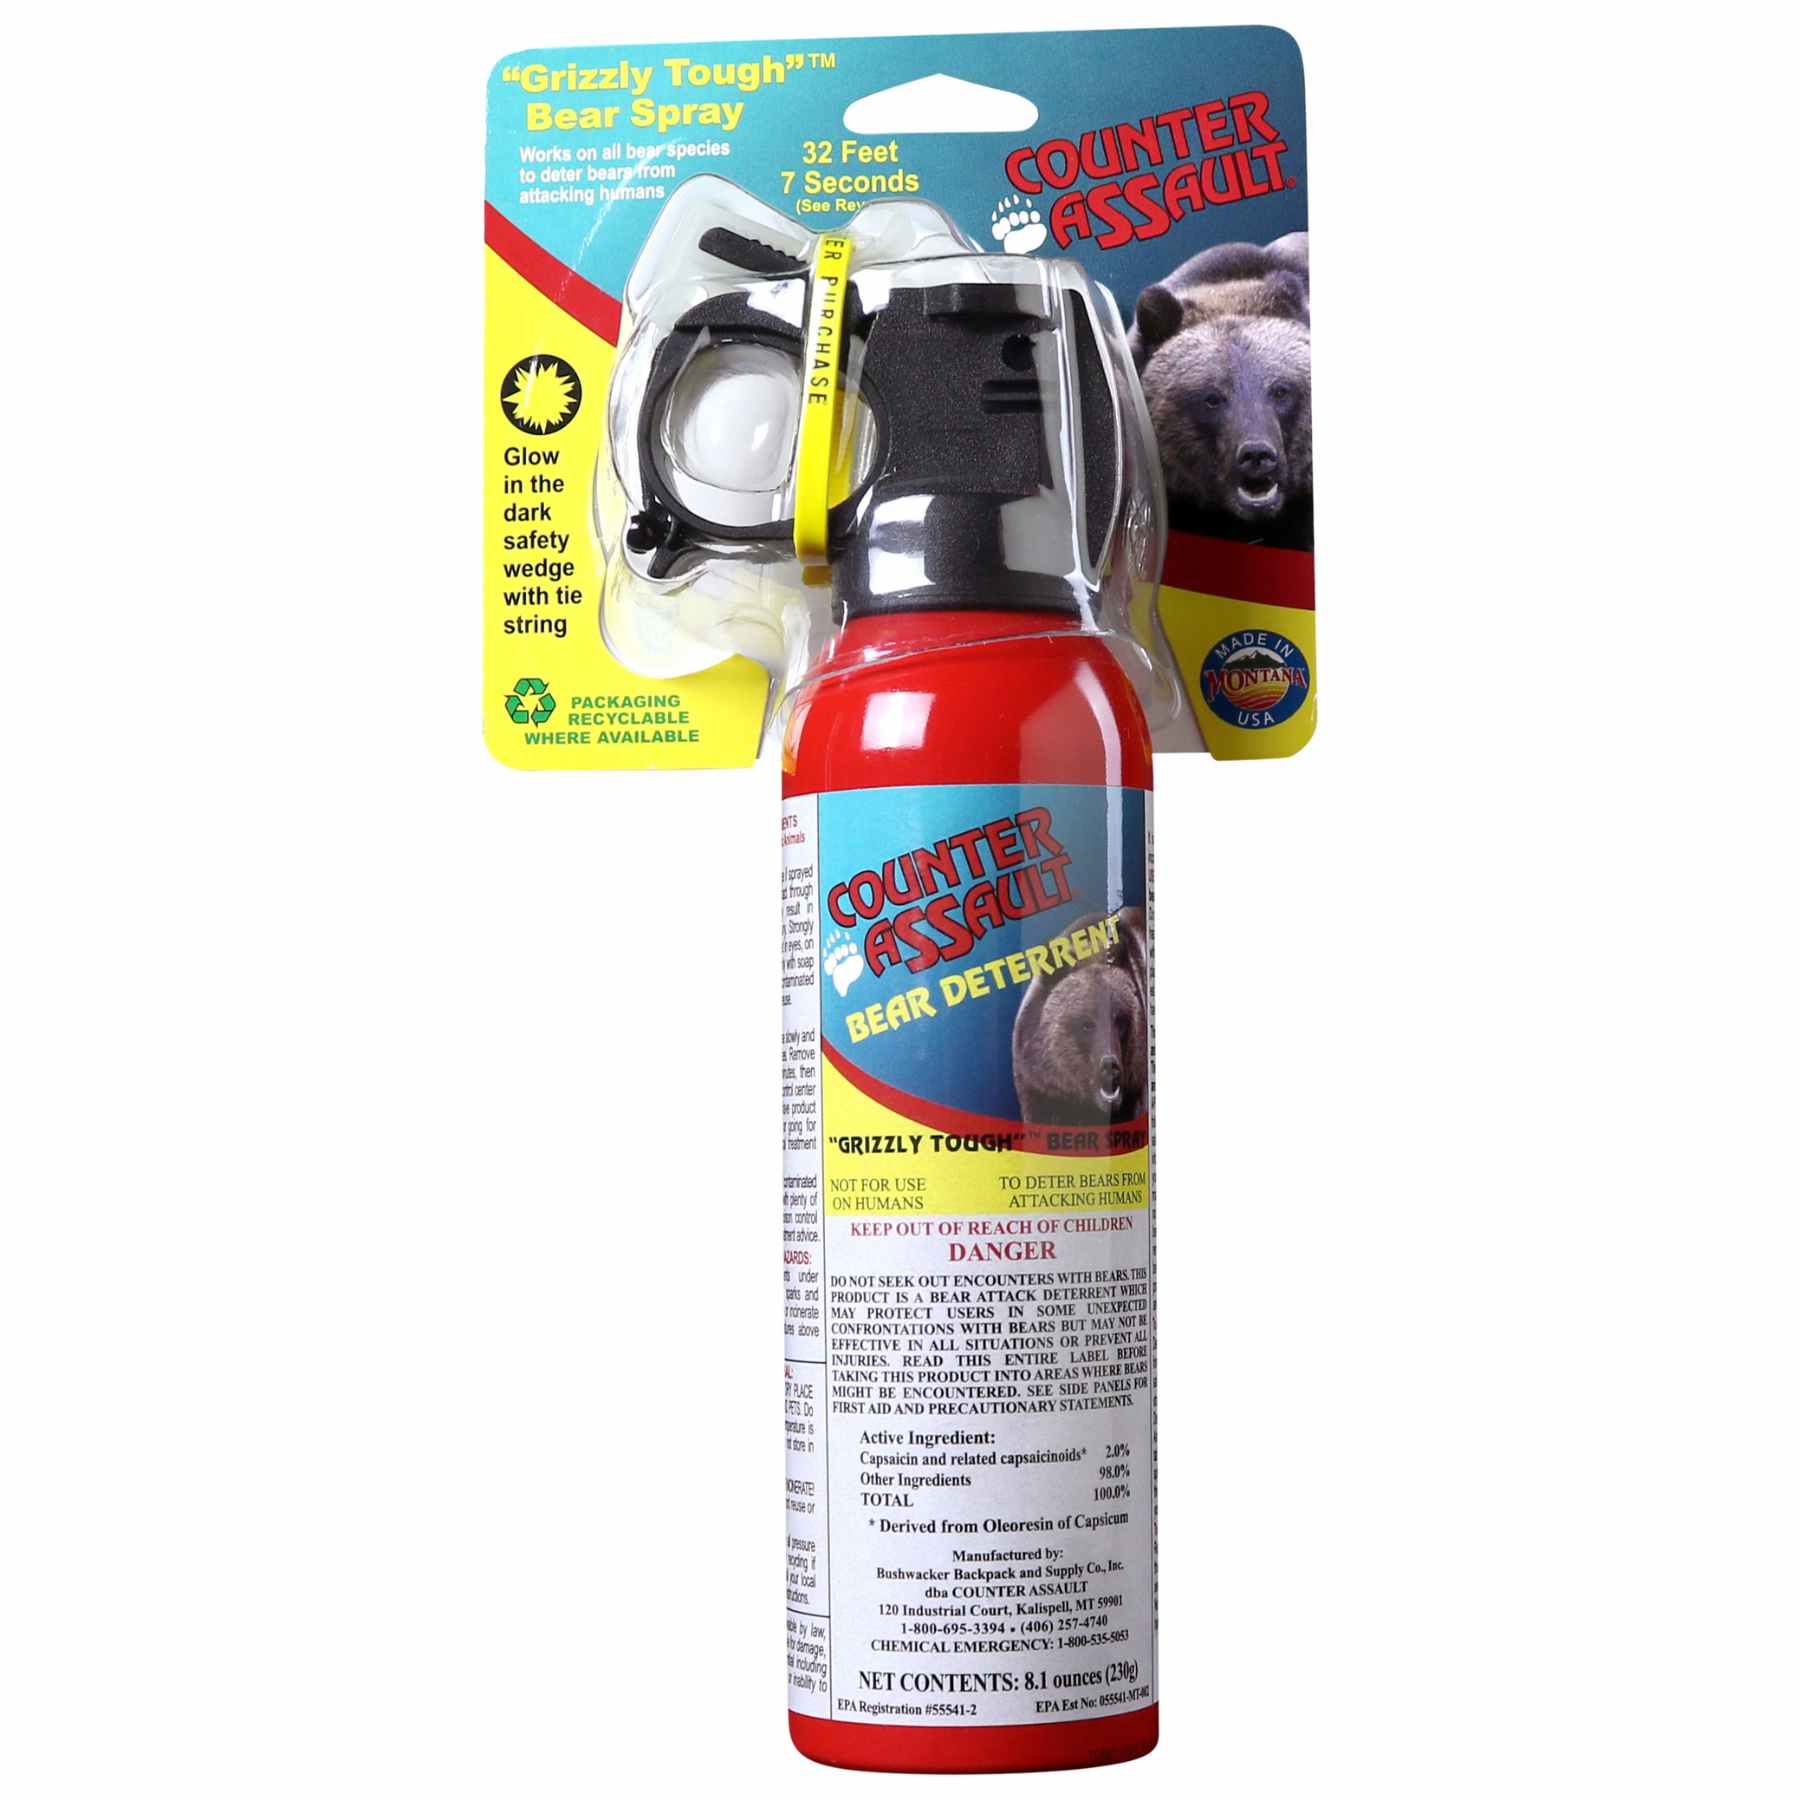 Counter Assault bear deterrent spray